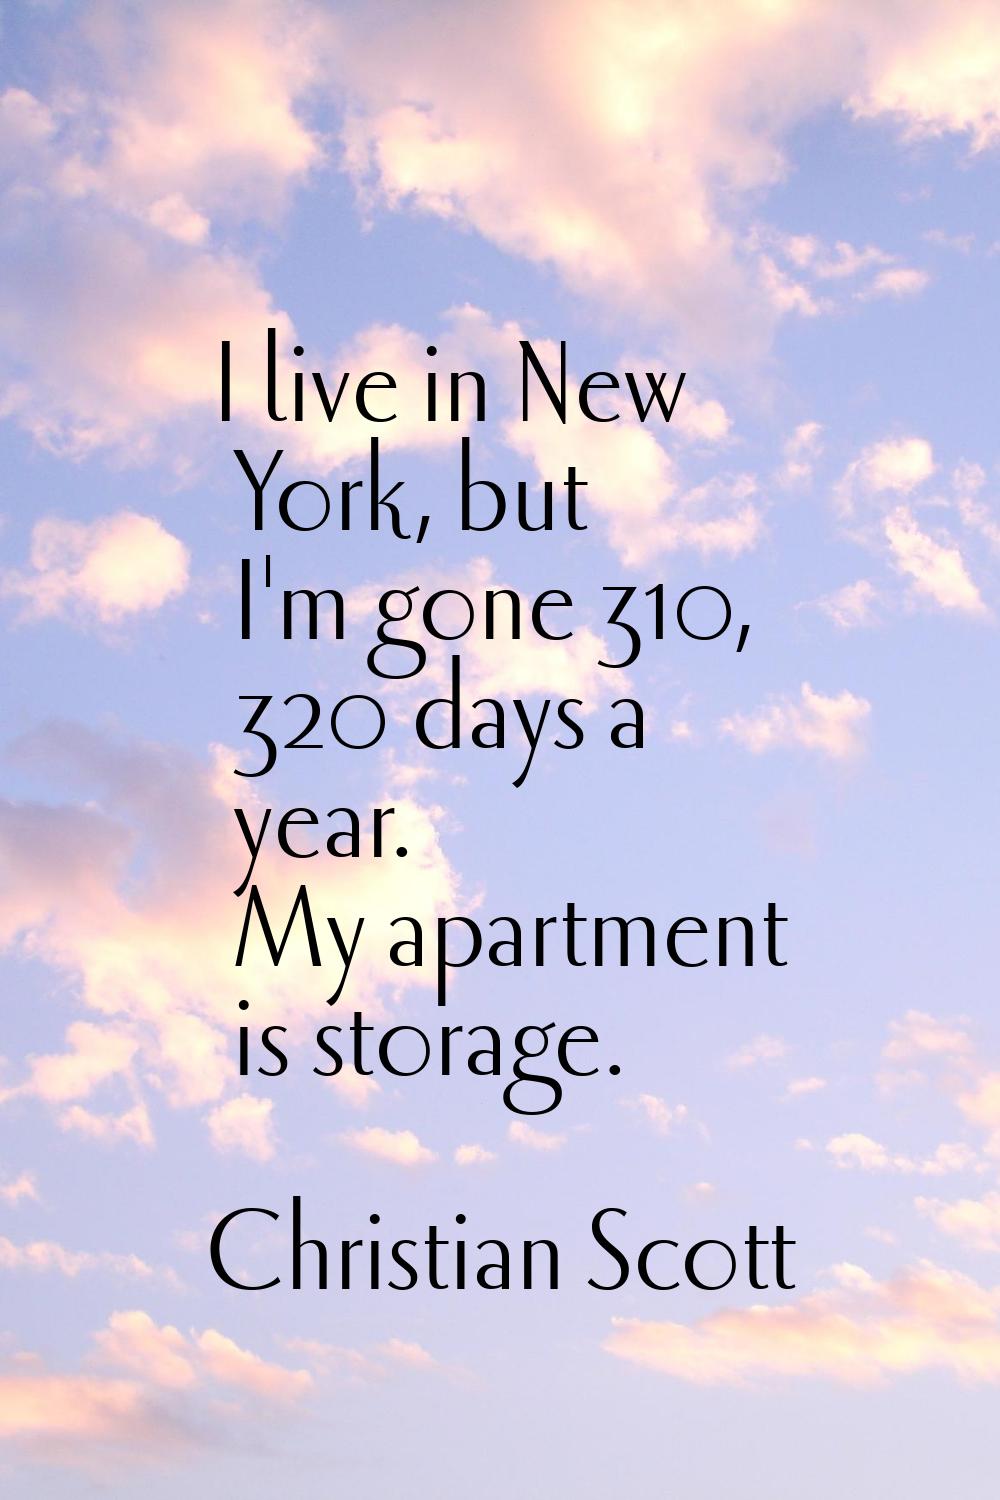 I live in New York, but I'm gone 310, 320 days a year. My apartment is storage.